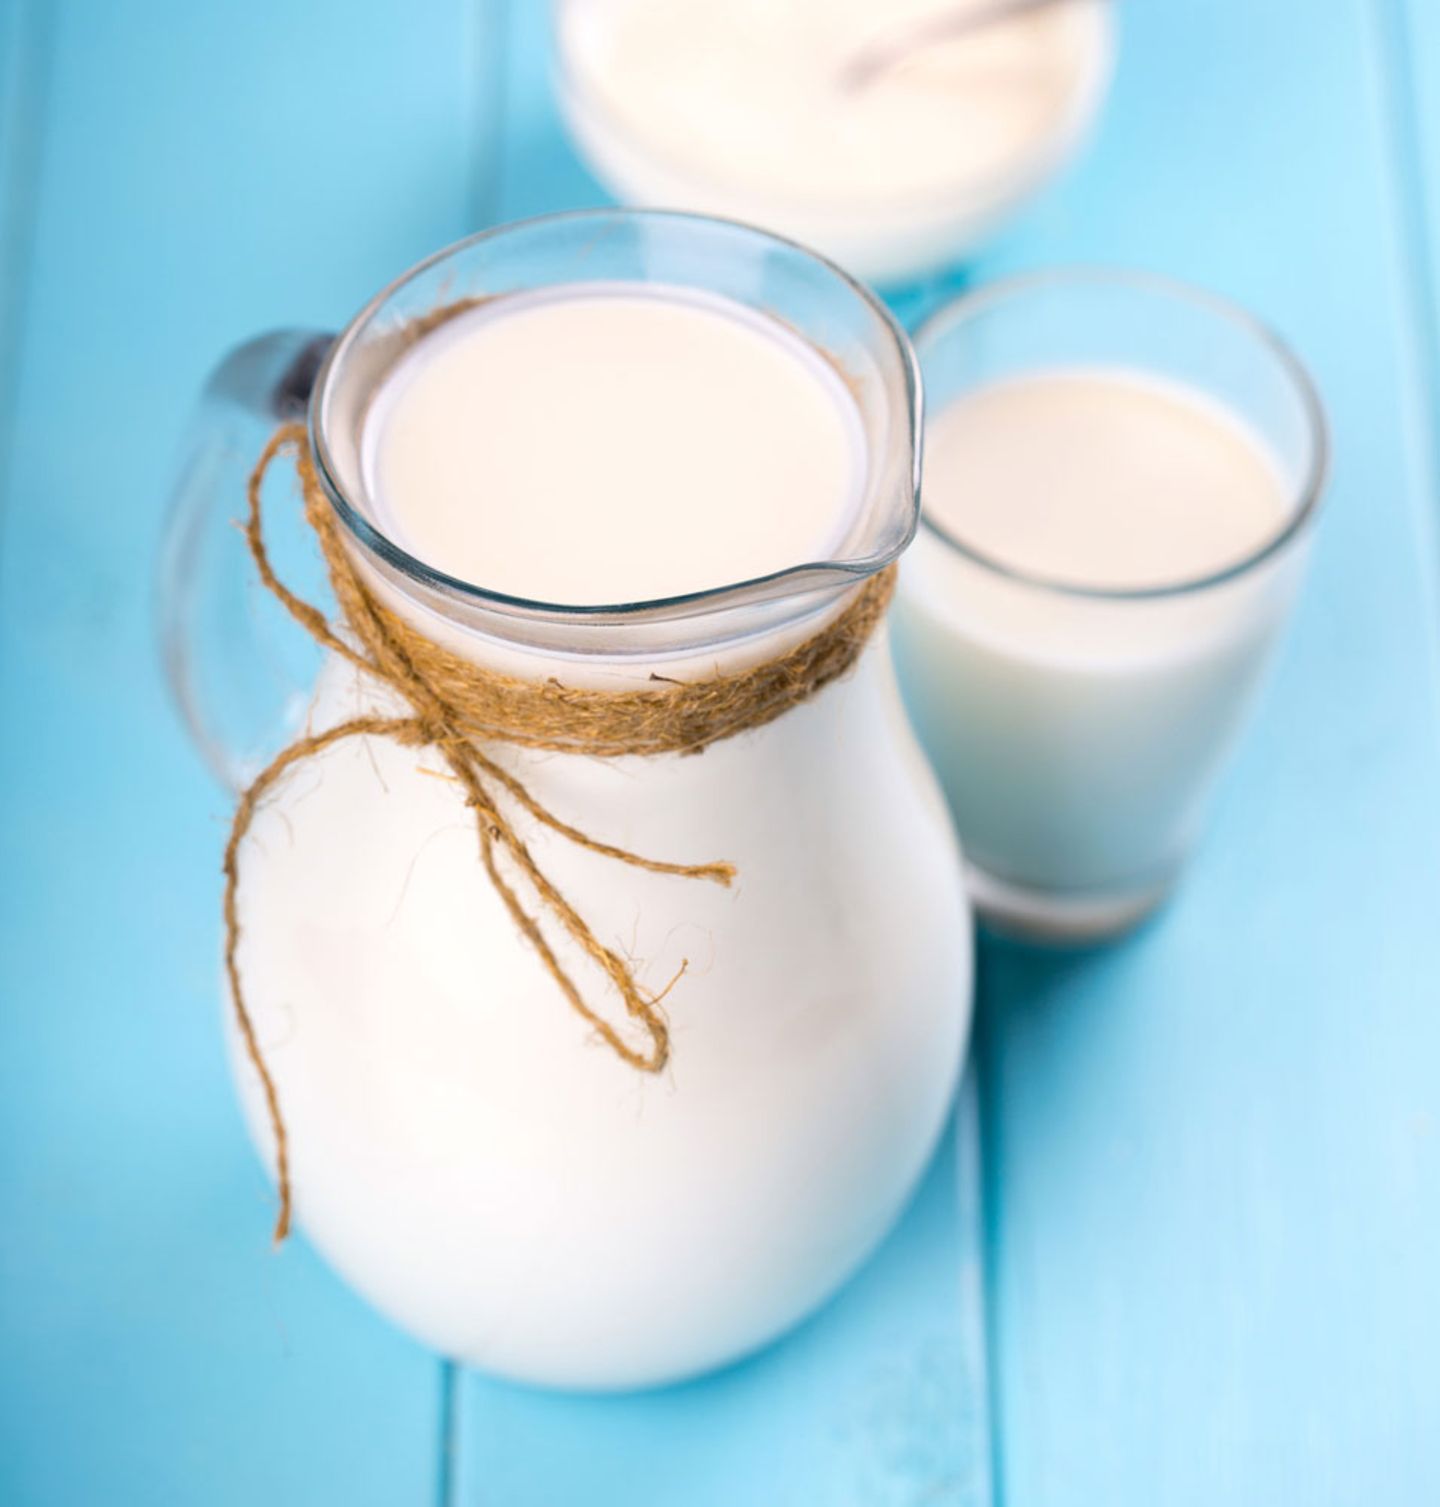 Mediterrane Diät: Milchkanne auf blauen Hintergrund